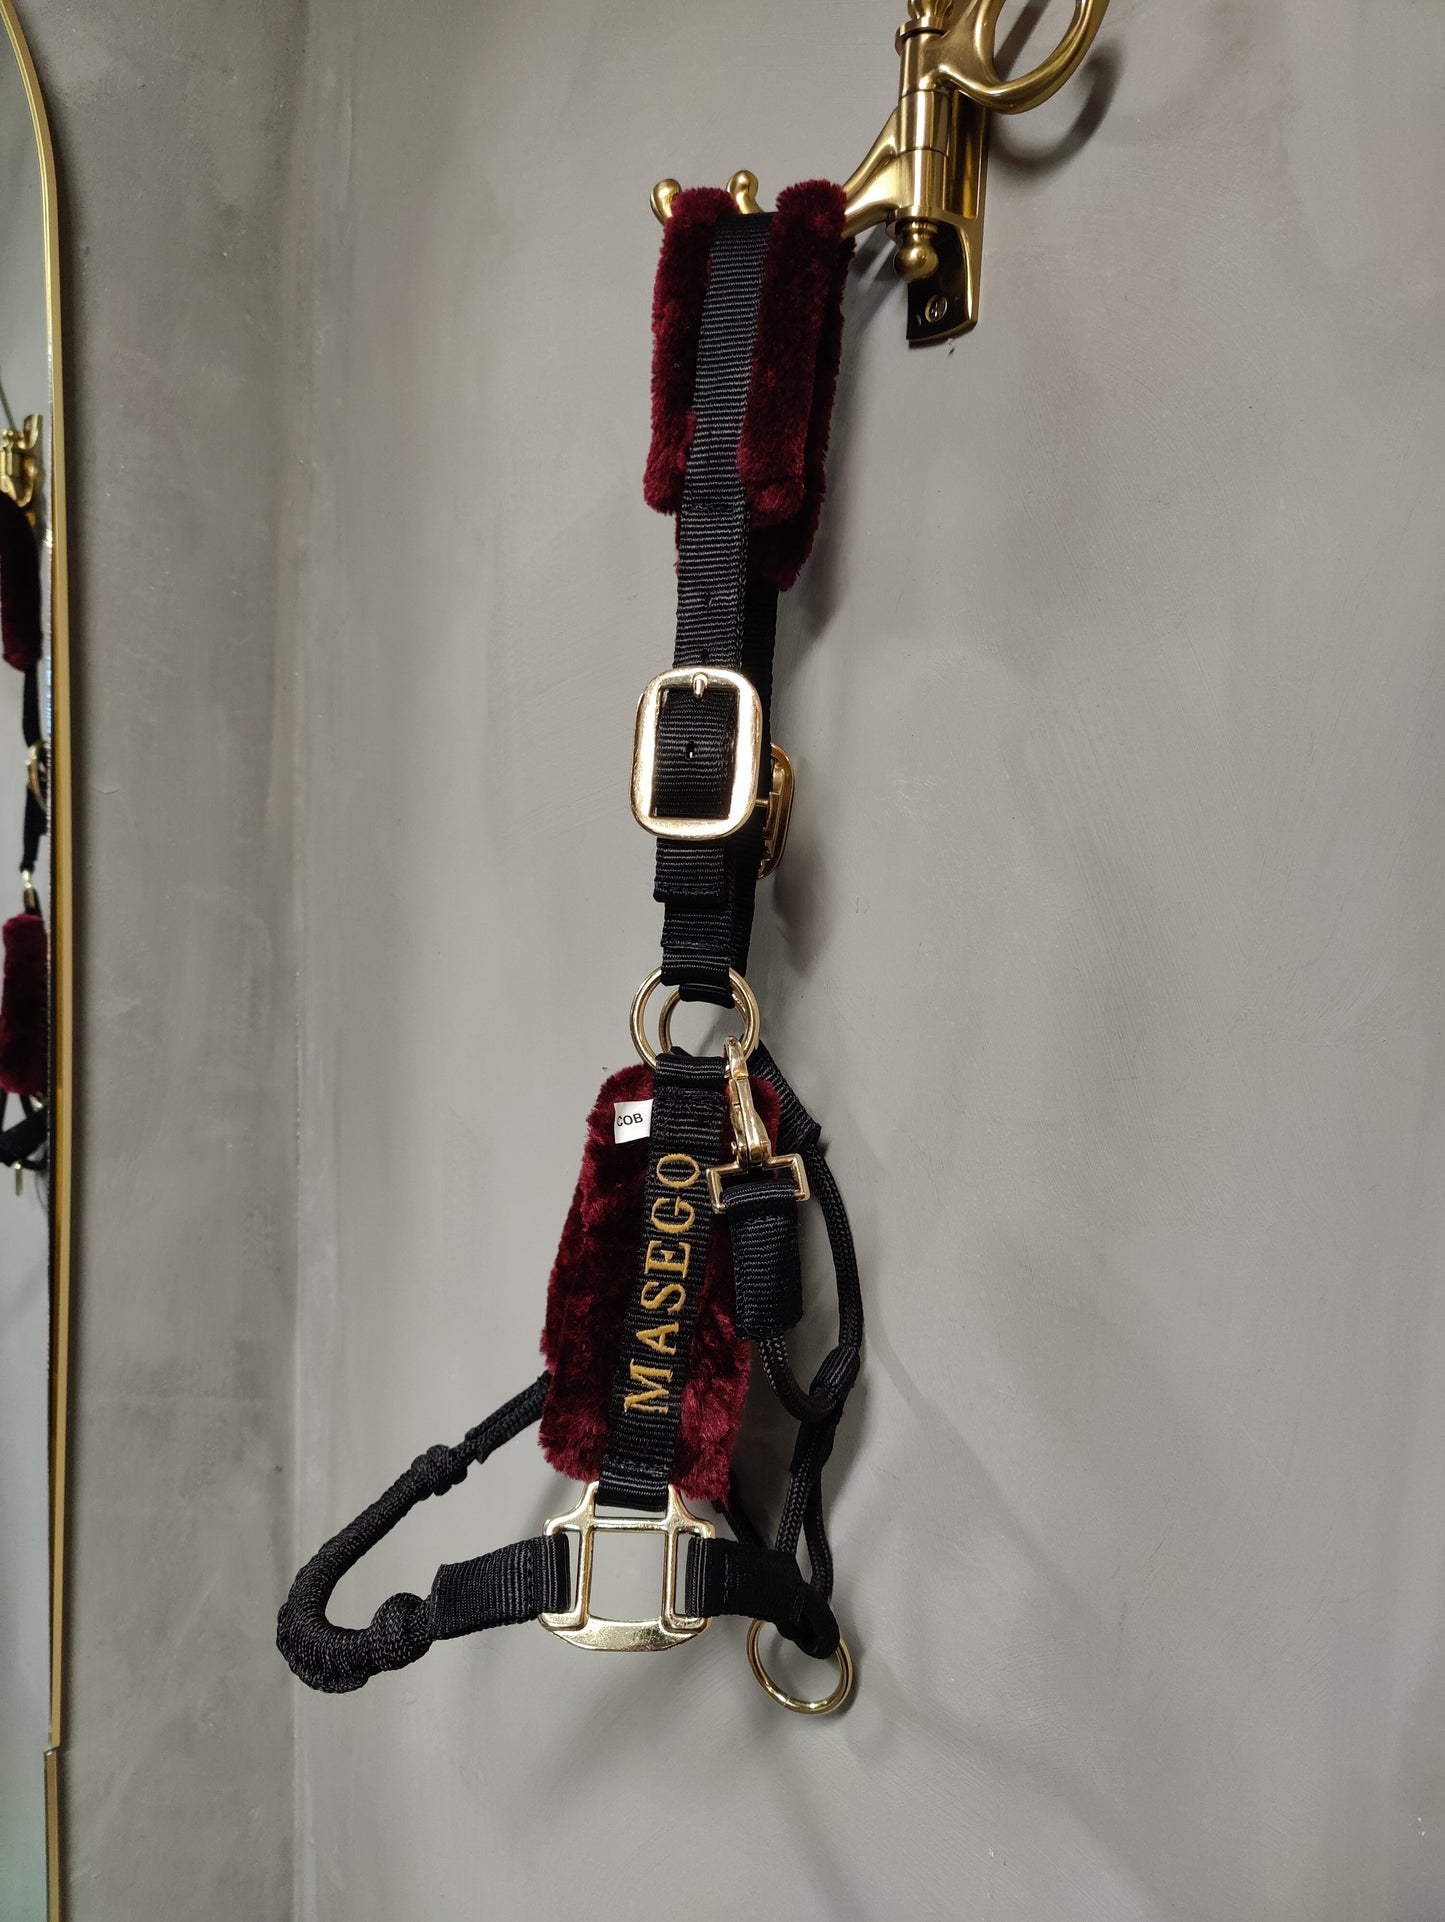 Ivy halter - black/burgundy - MASEGO horsewear